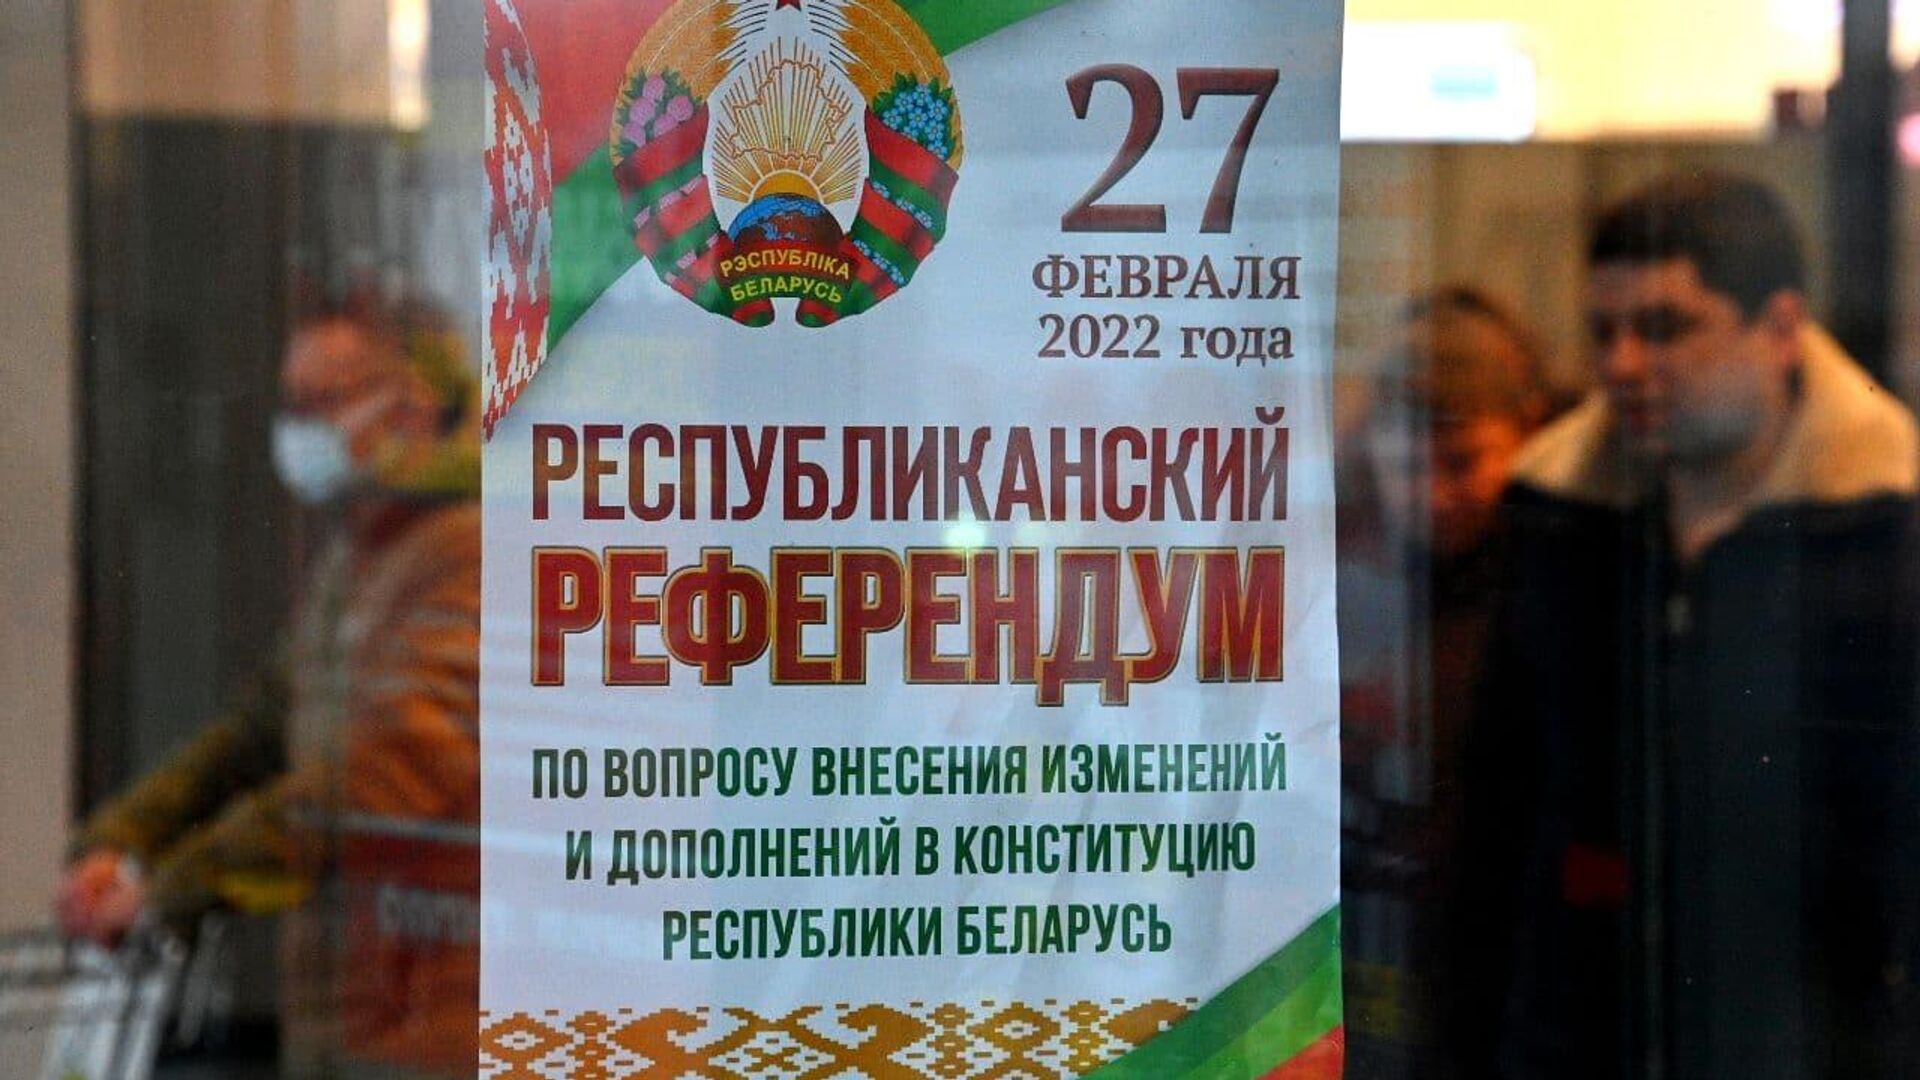 Республиканский референдум 27 февраля - Sputnik Беларусь, 1920, 20.02.2022